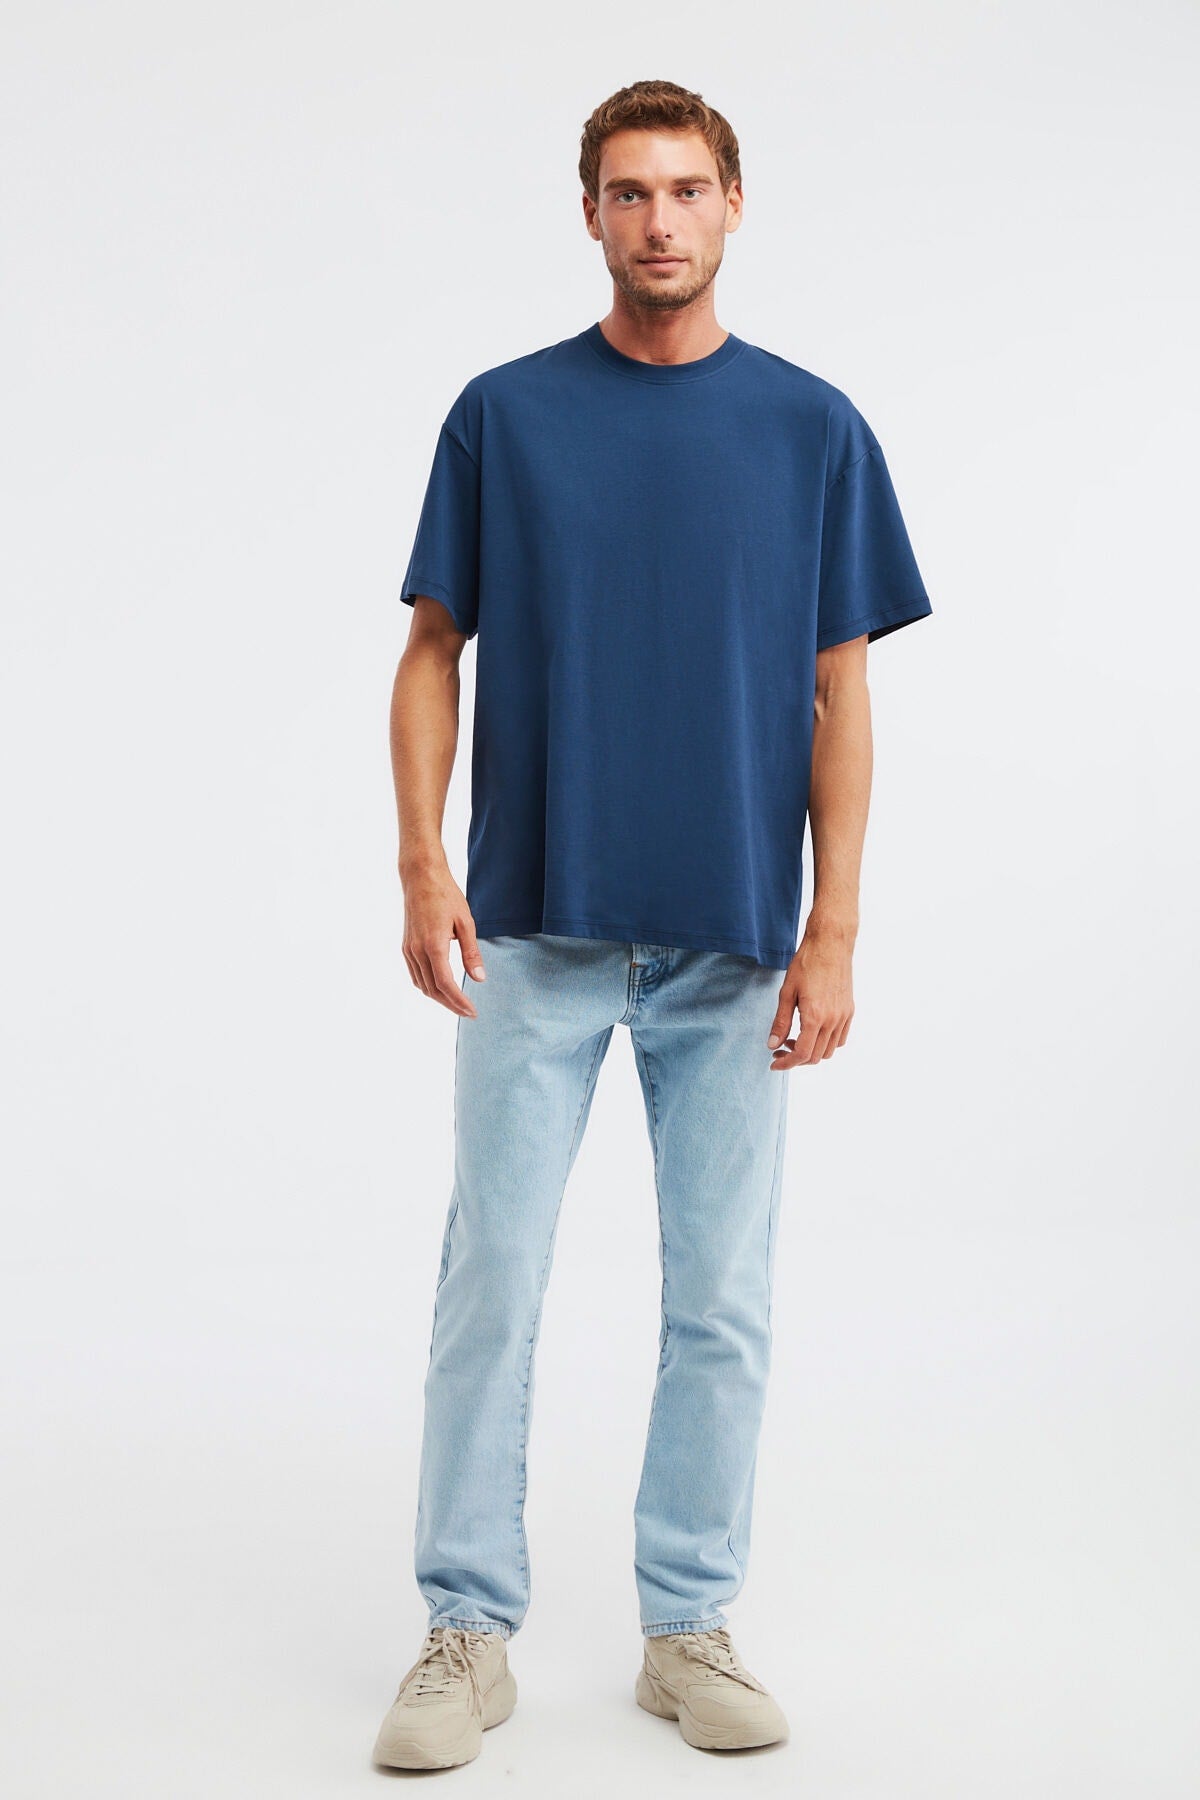 Jett Oversize Navy Blue T-shirt